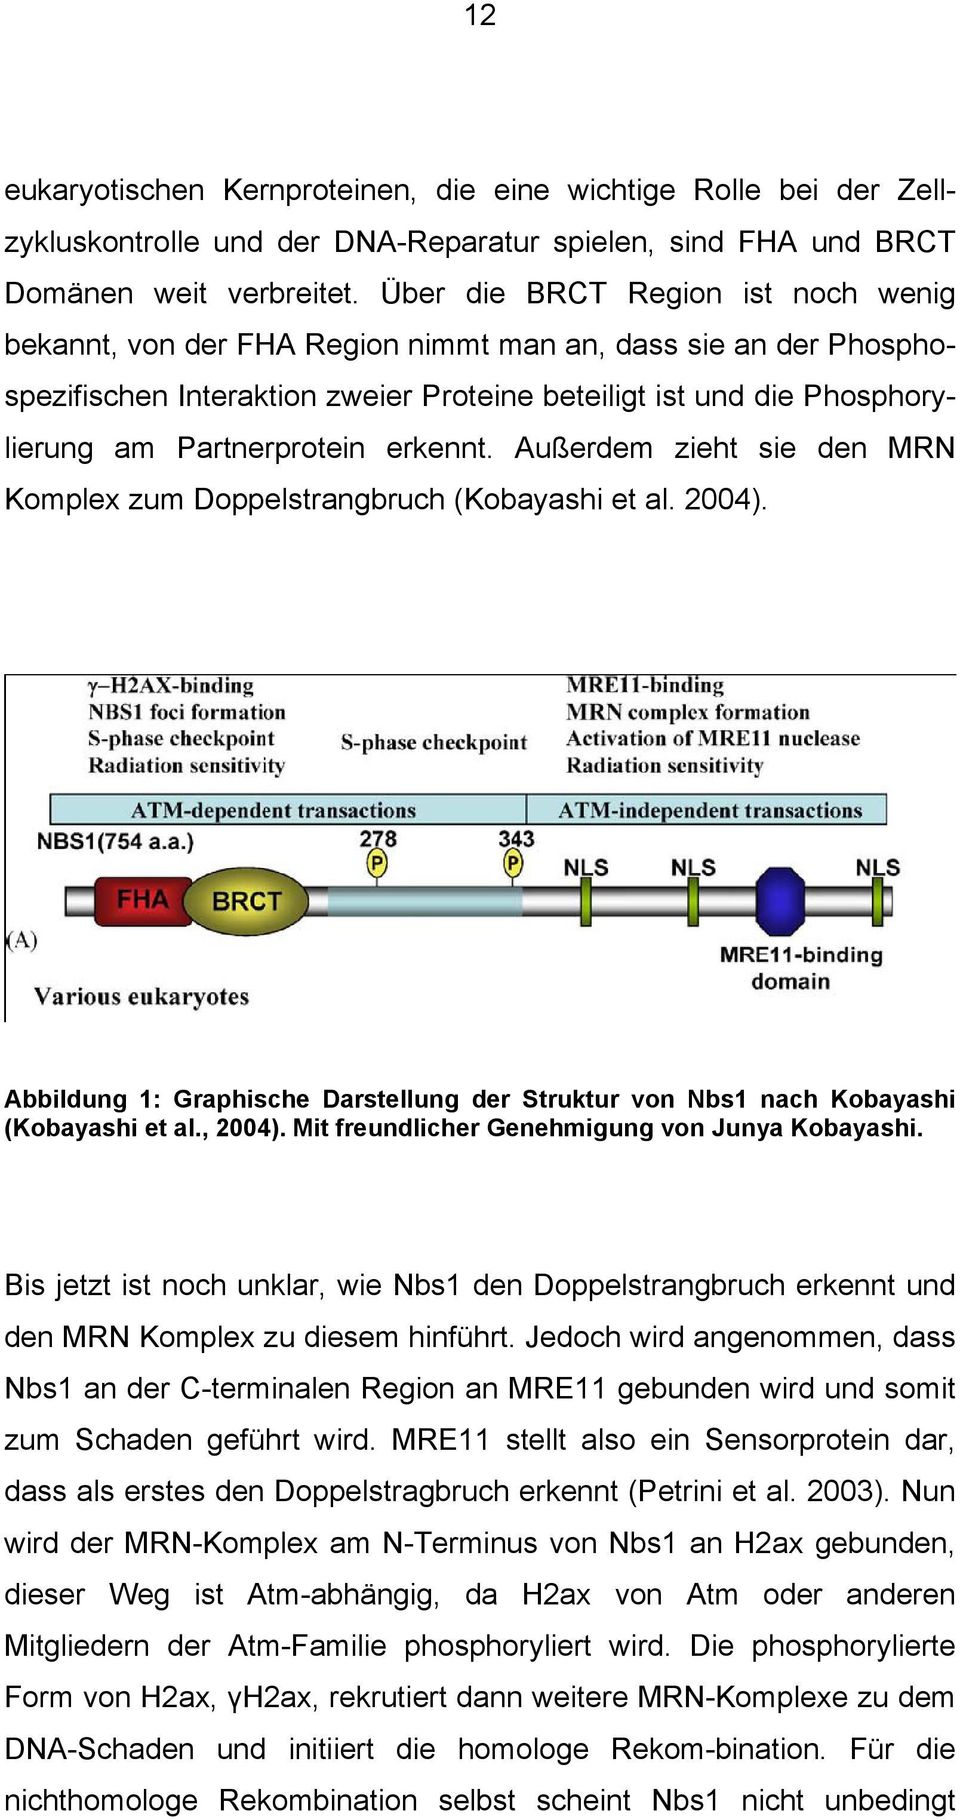 erkennt. Außerdem zieht sie den MRN Komplex zum Doppelstrangbruch (Kobayashi et al. 2004). Abbildung 1: Graphische Darstellung der Struktur von Nbs1 nach Kobayashi (Kobayashi et al., 2004).